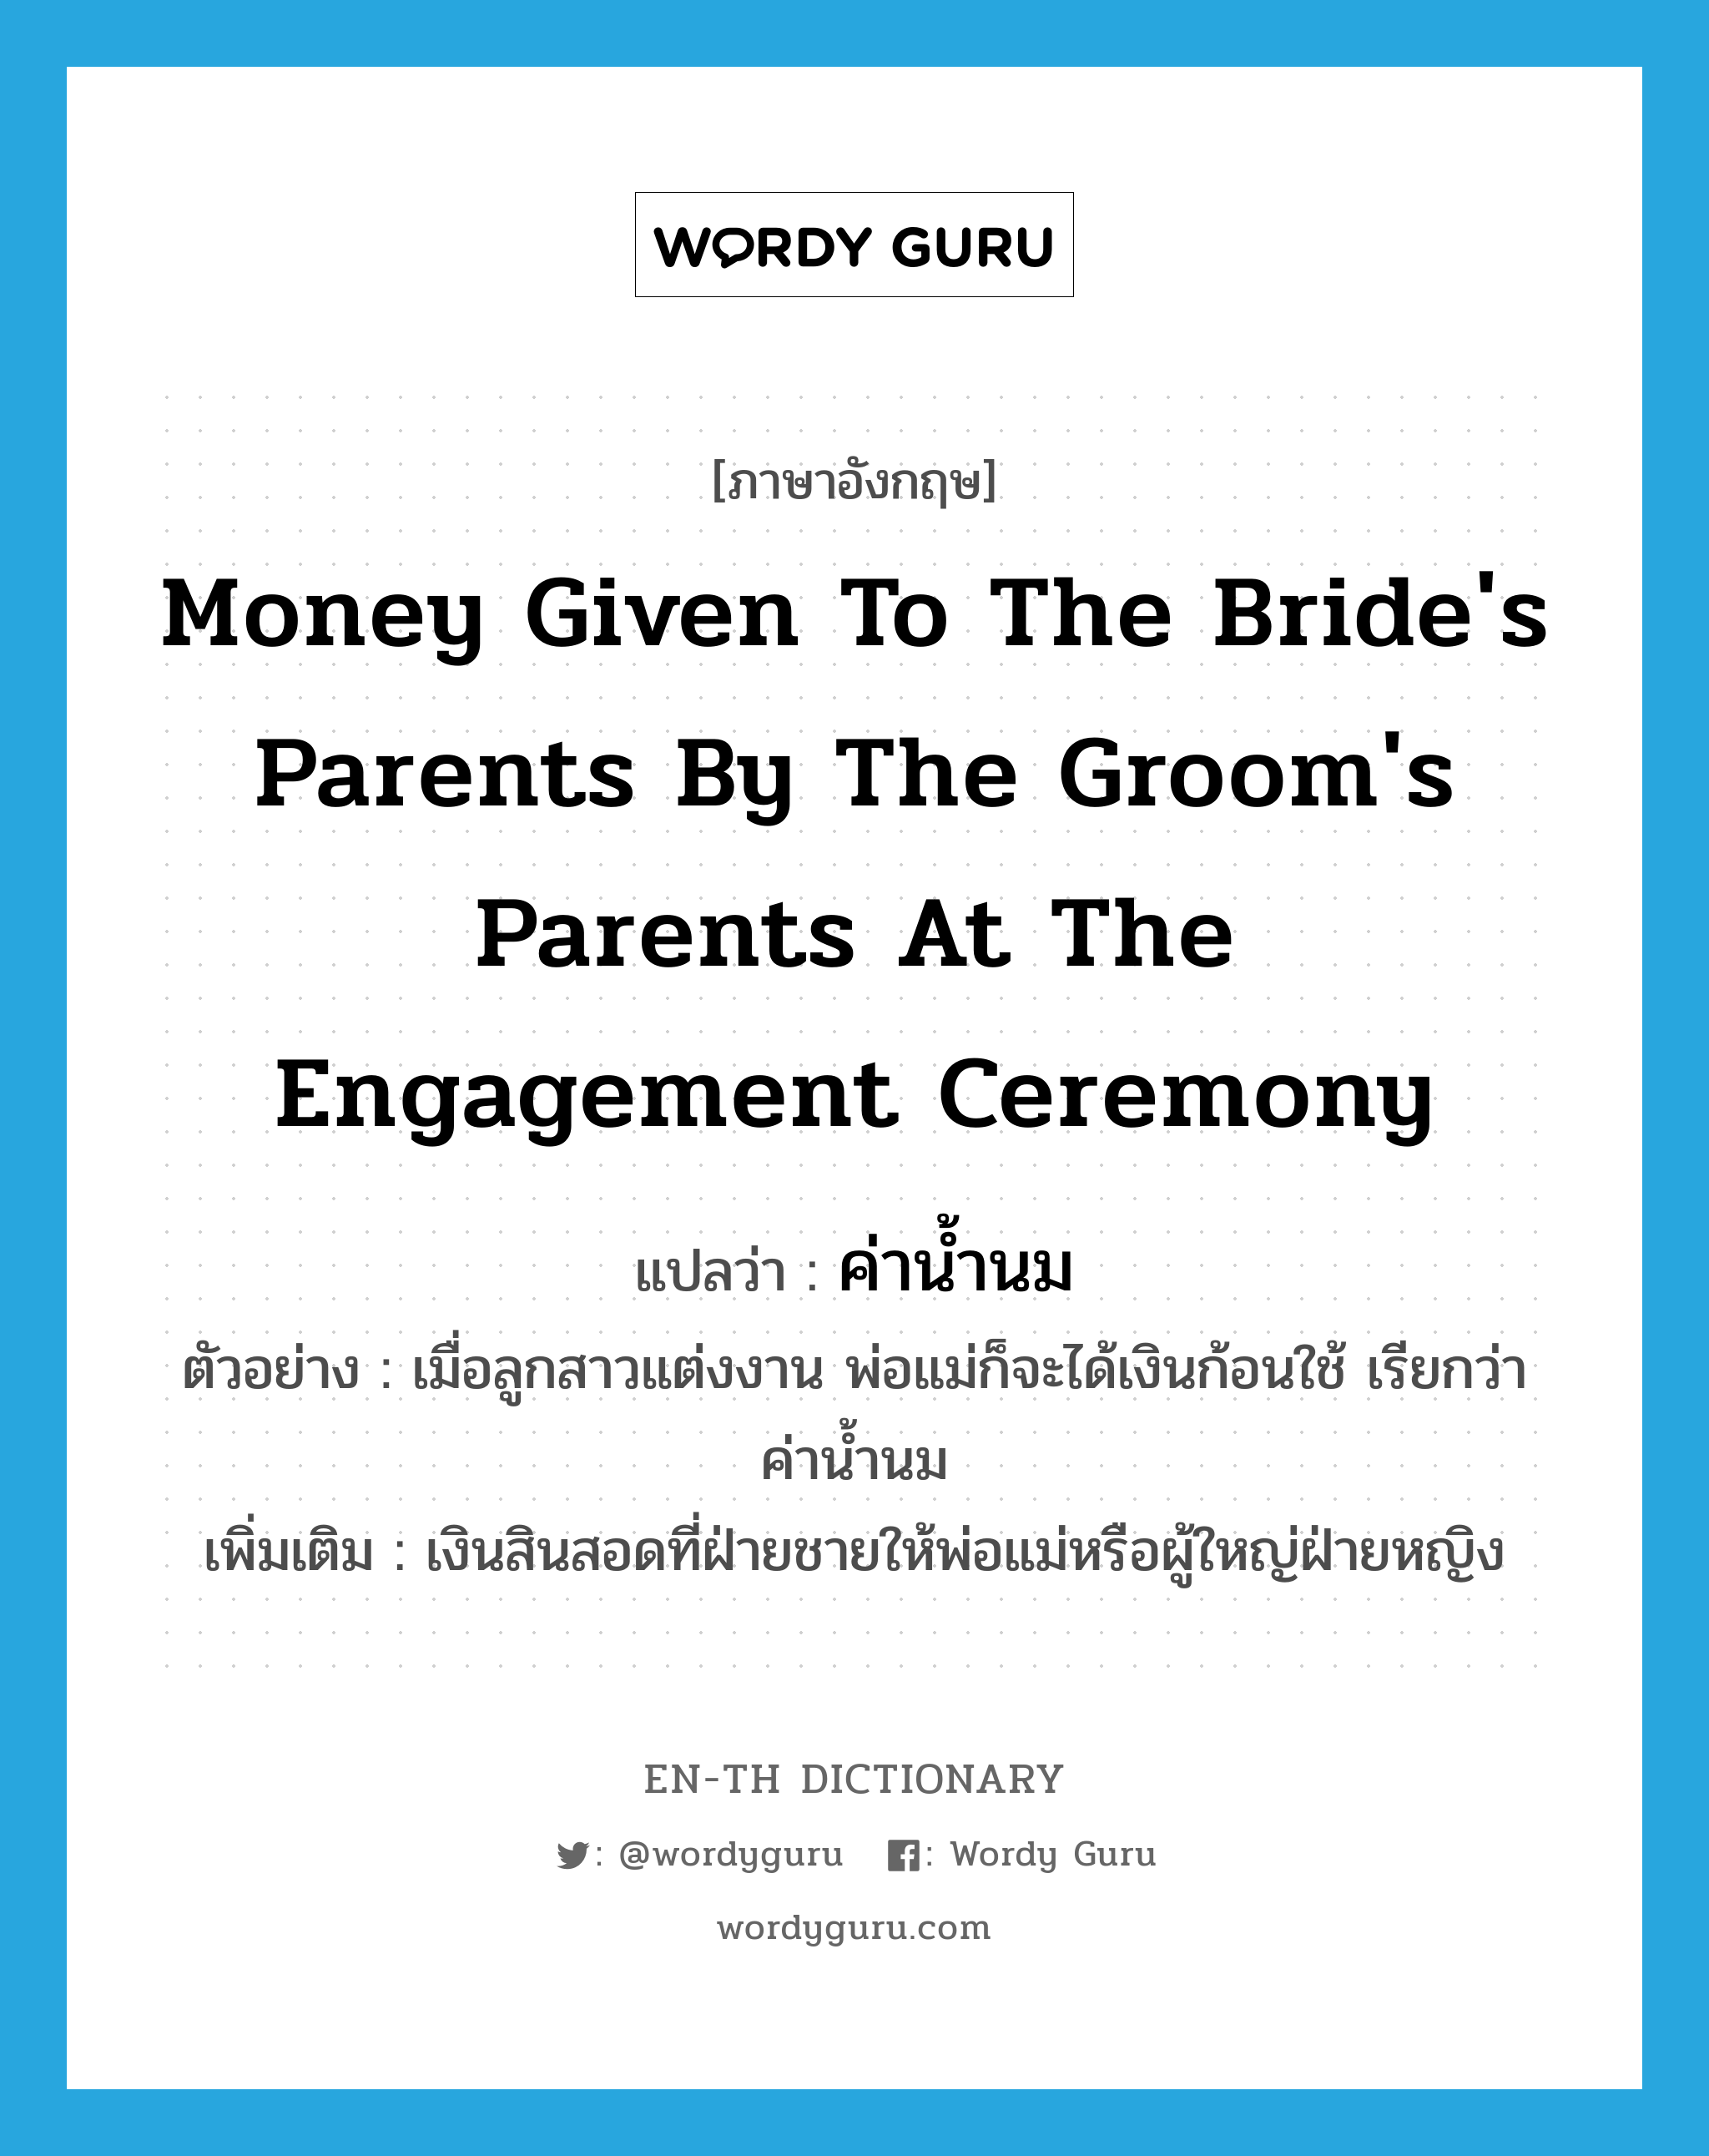 ค่าน้ำนม ภาษาอังกฤษ?, คำศัพท์ภาษาอังกฤษ ค่าน้ำนม แปลว่า money given to the bride's parents by the groom's parents at the engagement ceremony ประเภท N ตัวอย่าง เมื่อลูกสาวแต่งงาน พ่อแม่ก็จะได้เงินก้อนใช้ เรียกว่า ค่าน้ำนม เพิ่มเติม เงินสินสอดที่ฝ่ายชายให้พ่อแม่หรือผู้ใหญ่ฝ่ายหญิง หมวด N